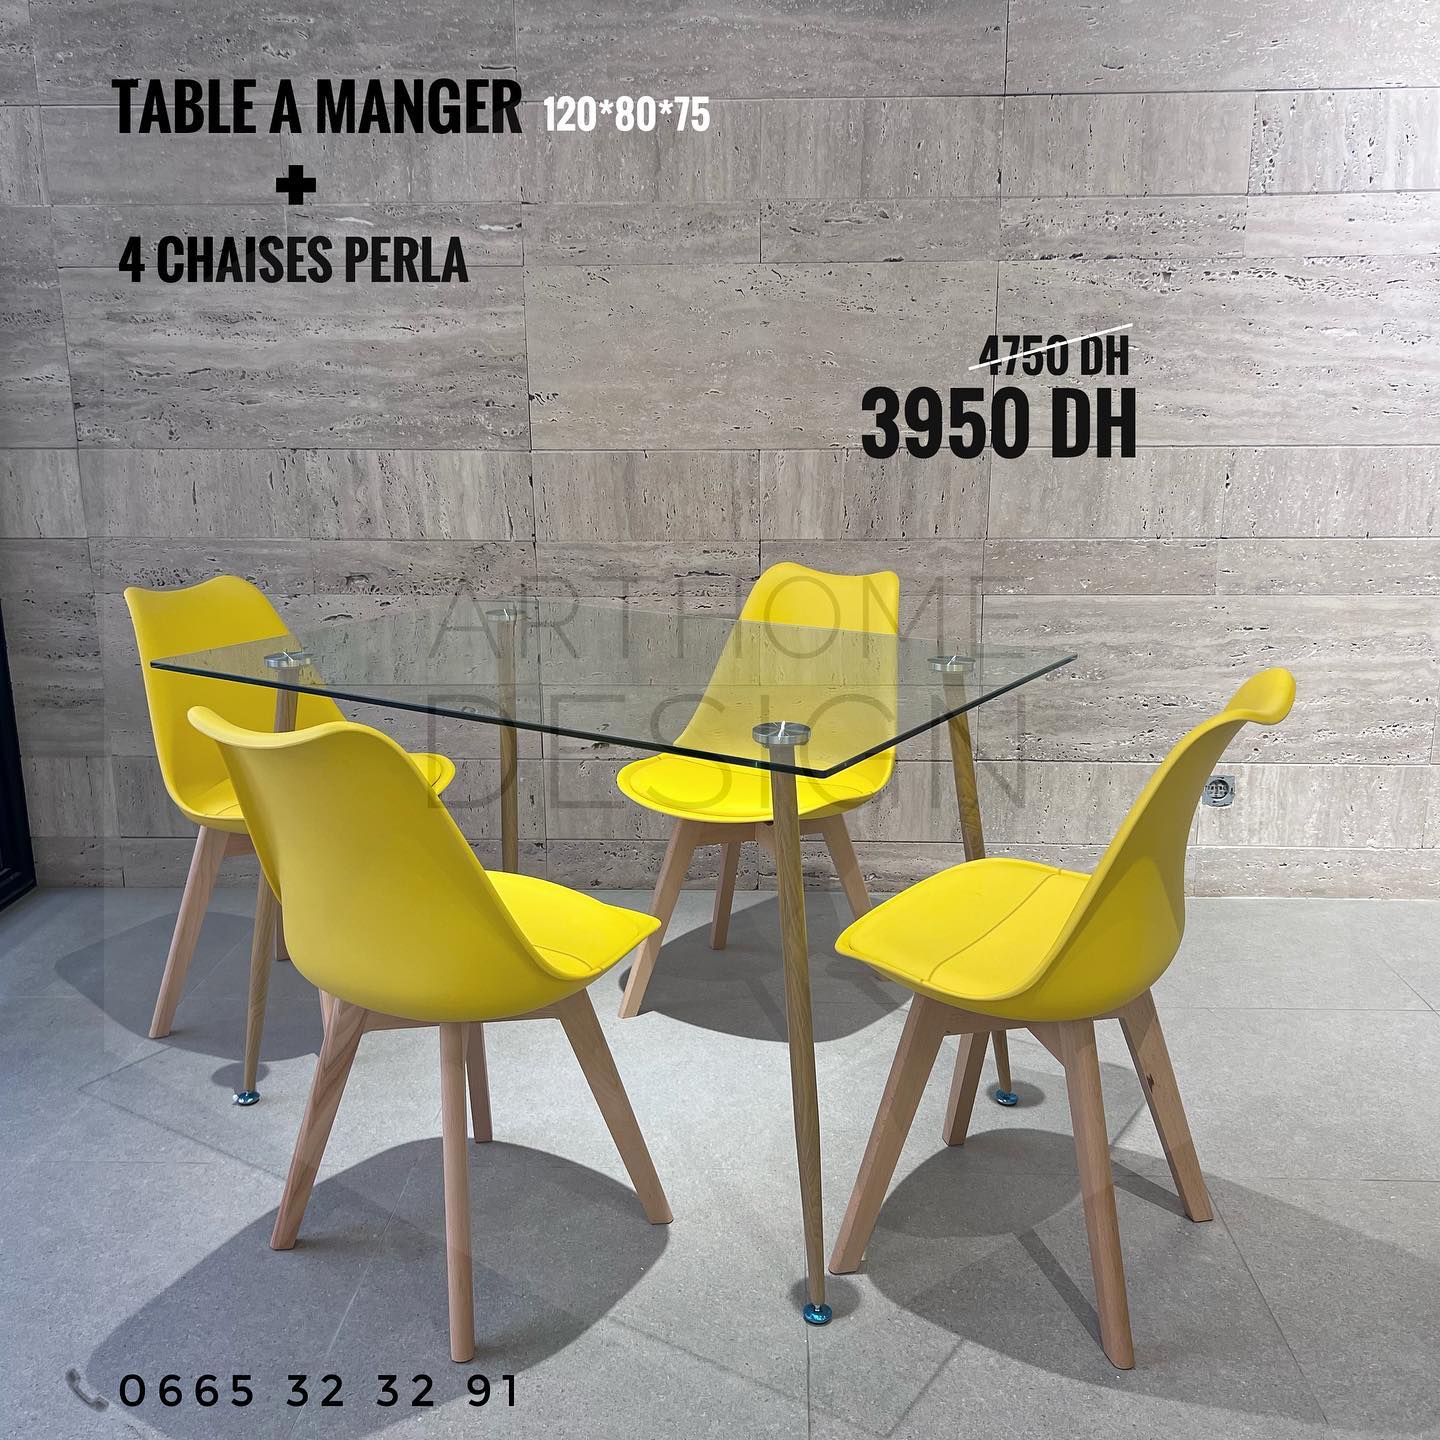 TABLE A MANGER RECTANGULAIRE EN VERRE (L) 120*80 + 4CHAISES PERLA